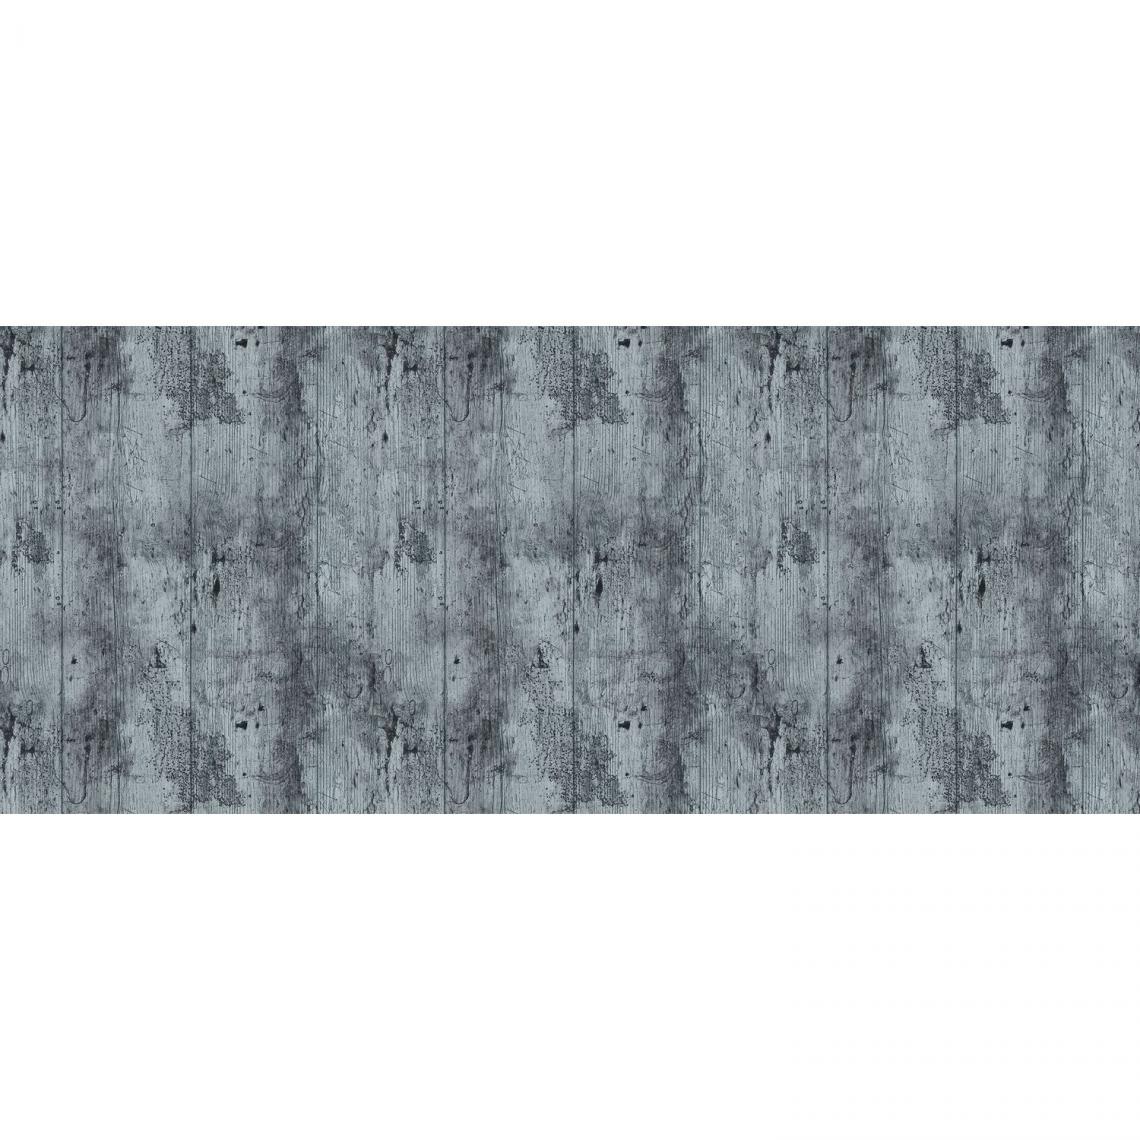 Cpm - Lot 2x Adhésif décoratif pour meuble Bois vieilli - 200 x 45 cm - Gris - Papier peint